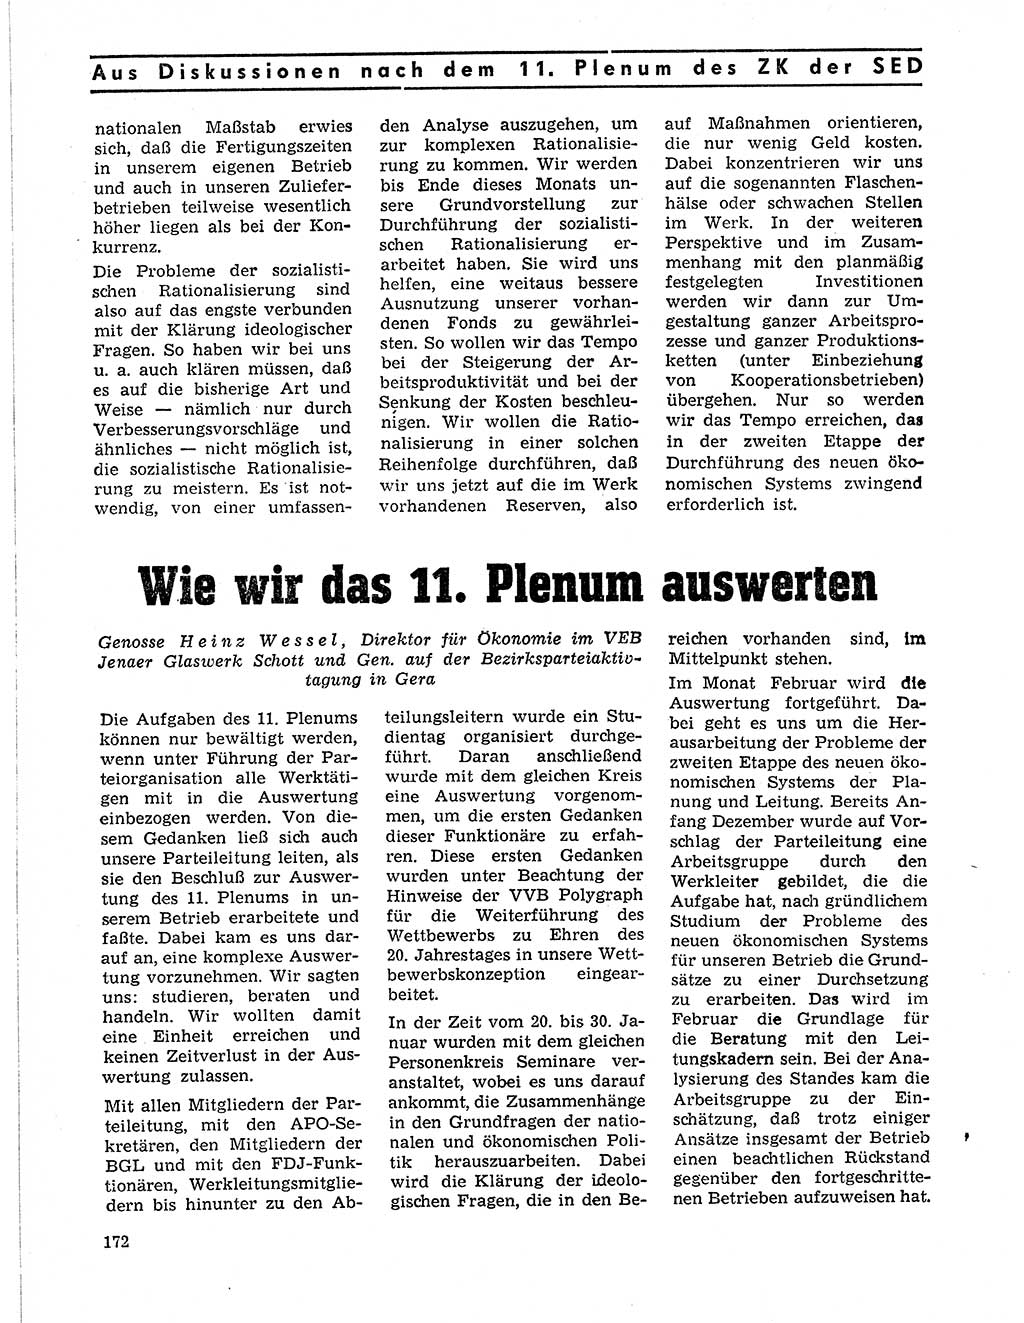 Neuer Weg (NW), Organ des Zentralkomitees (ZK) der SED (Sozialistische Einheitspartei Deutschlands) für Fragen des Parteilebens, 21. Jahrgang [Deutsche Demokratische Republik (DDR)] 1966, Seite 172 (NW ZK SED DDR 1966, S. 172)